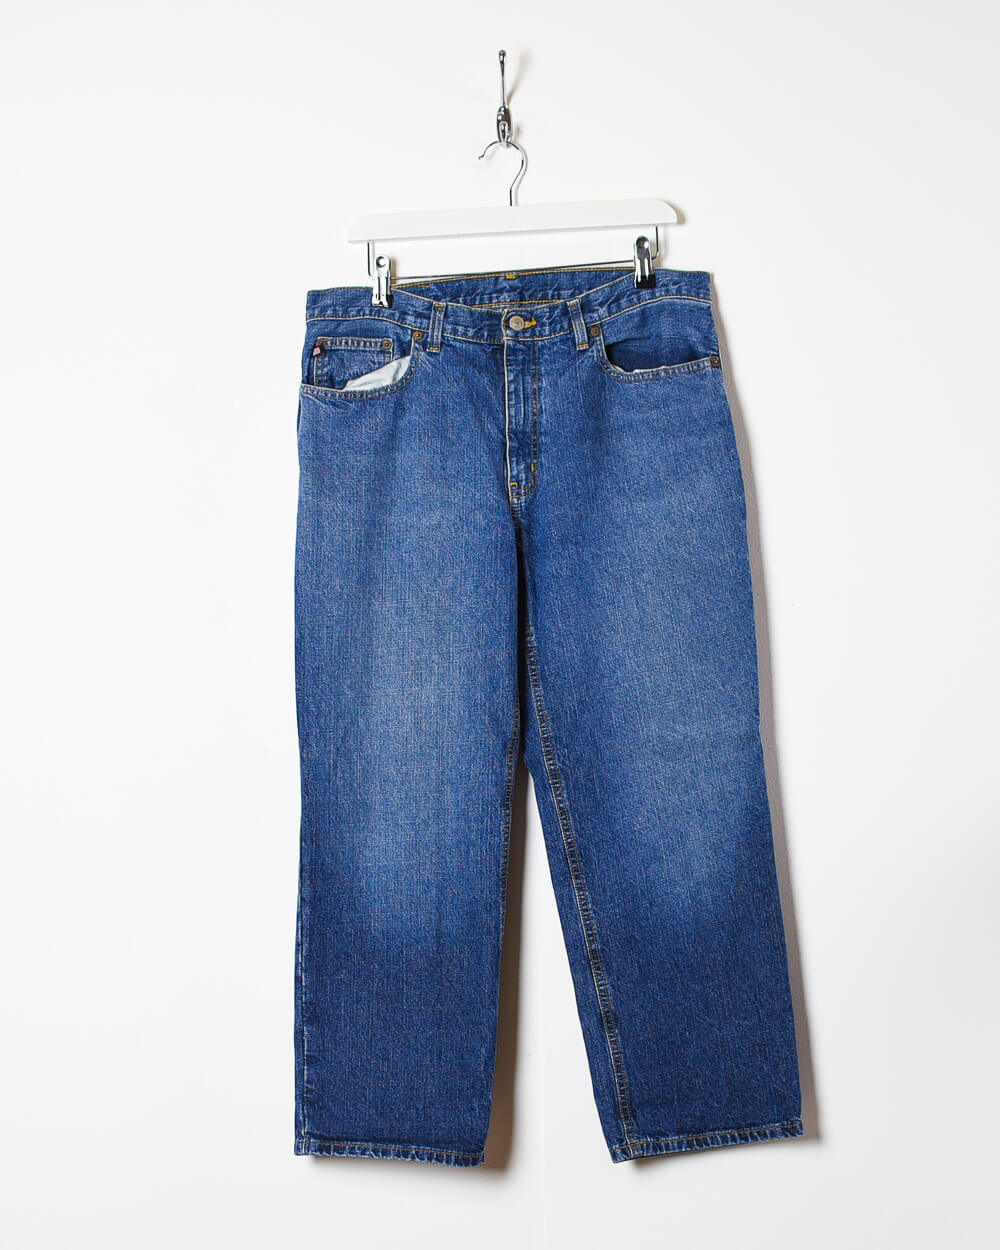 Vintage Polo Jeans Company Ralph Lauren Womens Jeans 10x31 Actual